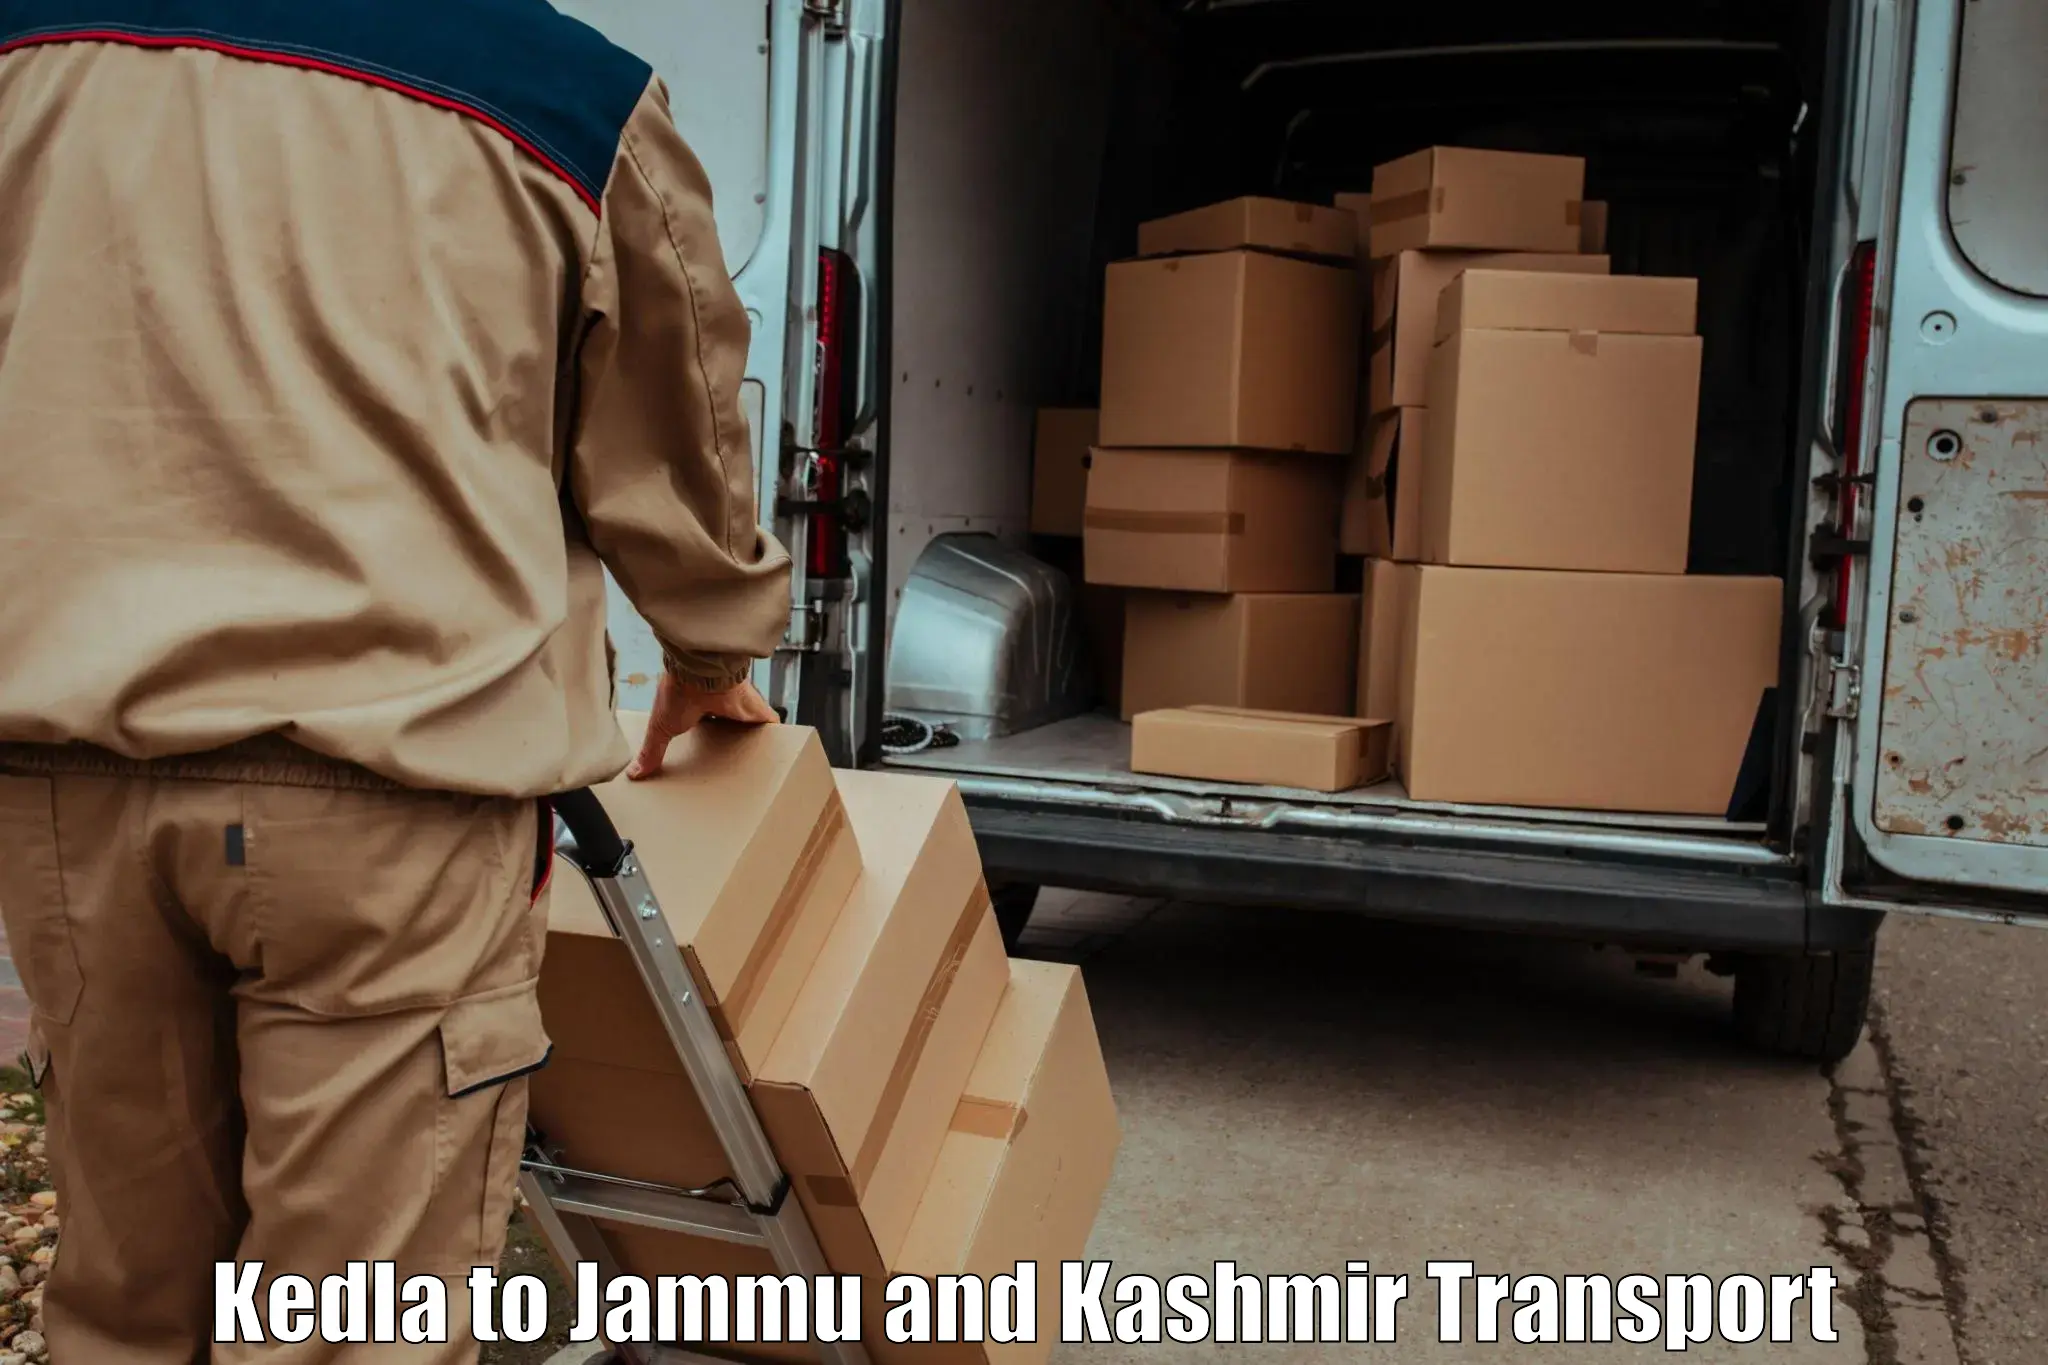 Package delivery services Kedla to Srinagar Kashmir